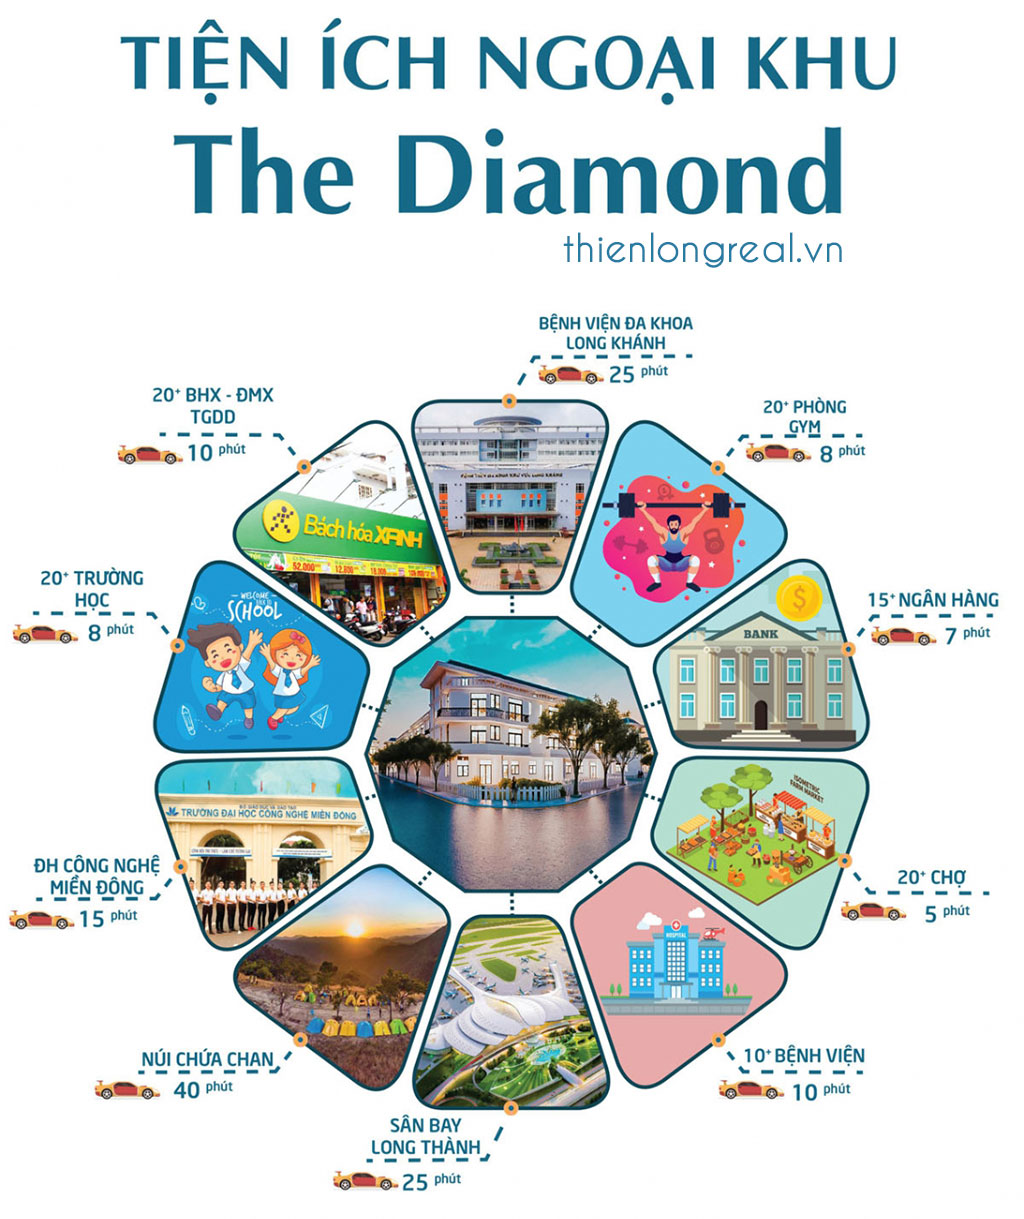 Liên kết tiện ích ngoại khu dự án The Diamond